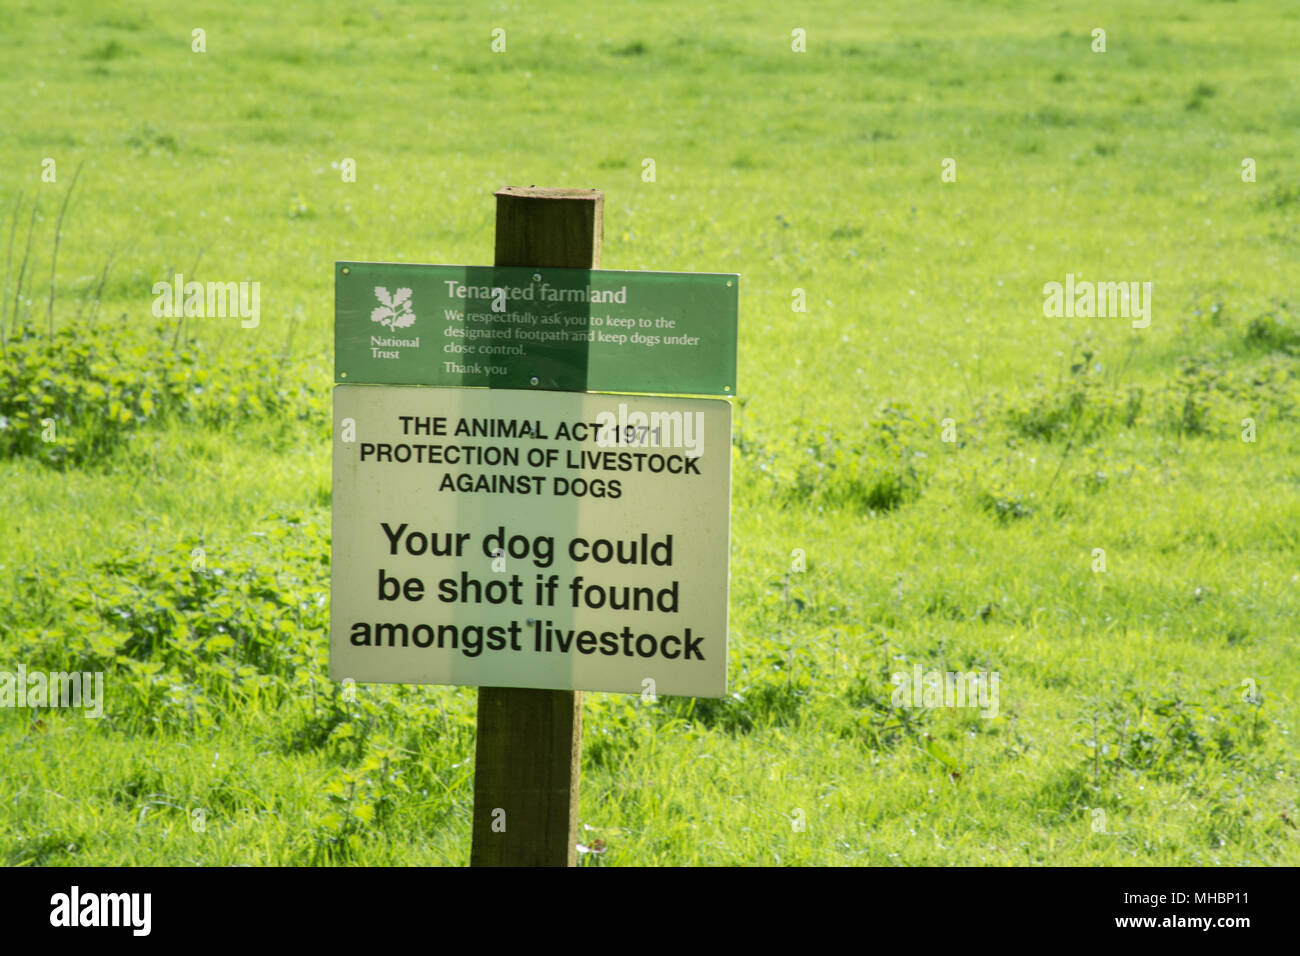 Campo accedi indicando l'animale act 1971 protezione del bestiame contro i cani - il vostro cane potrebbe essere sparato se trovato tra il bestiame Foto Stock